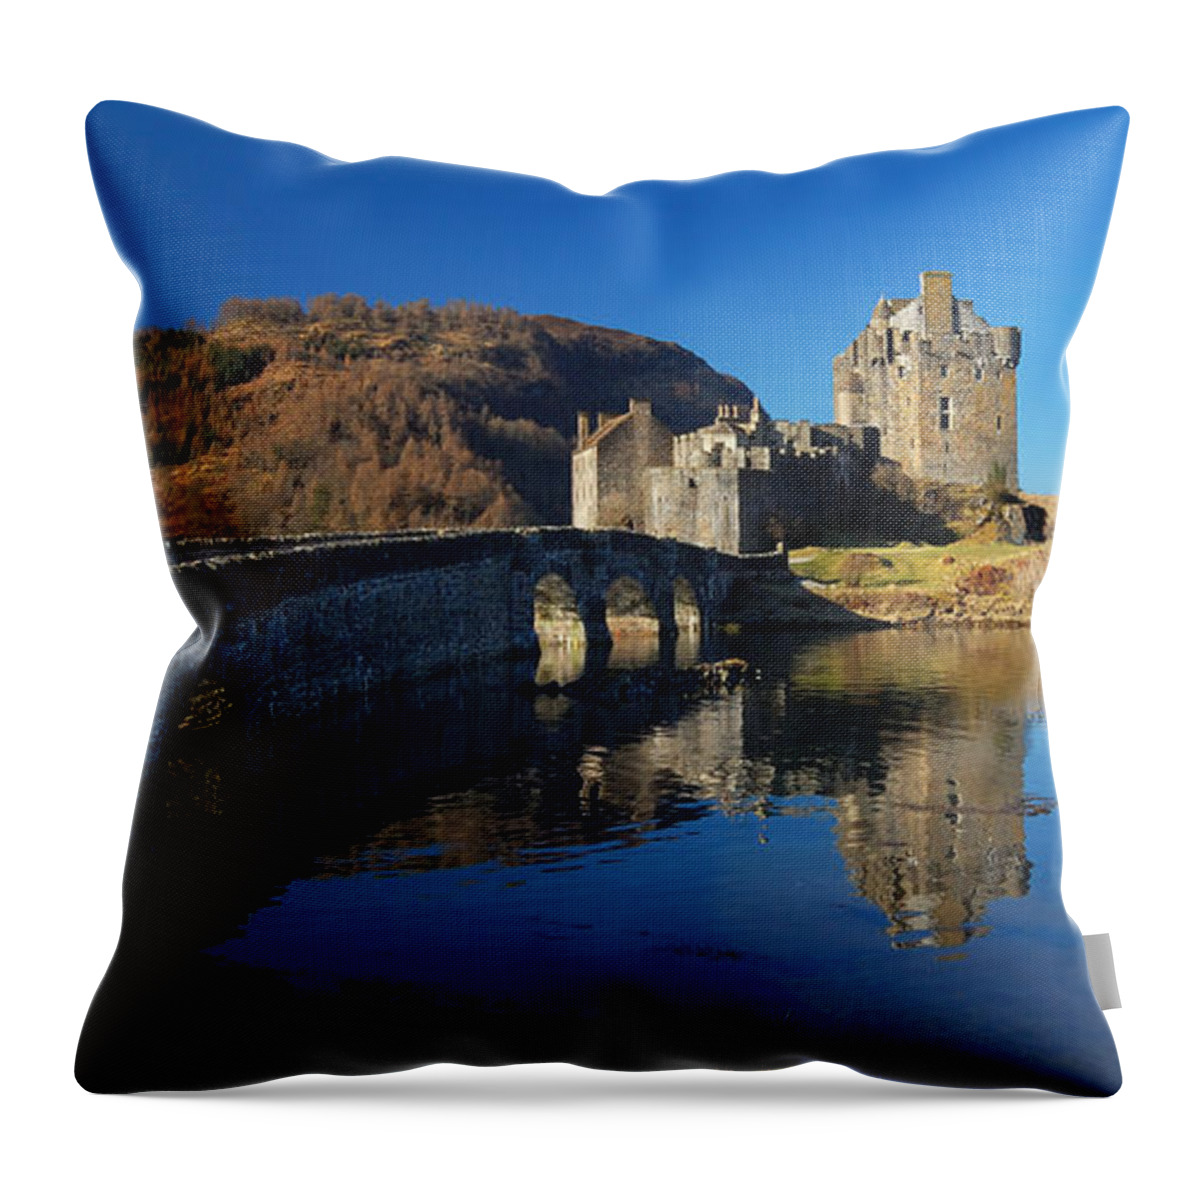 Eilean Donan Castle Throw Pillow featuring the photograph Eilean Donan Castle #1 by Gavin Macrae